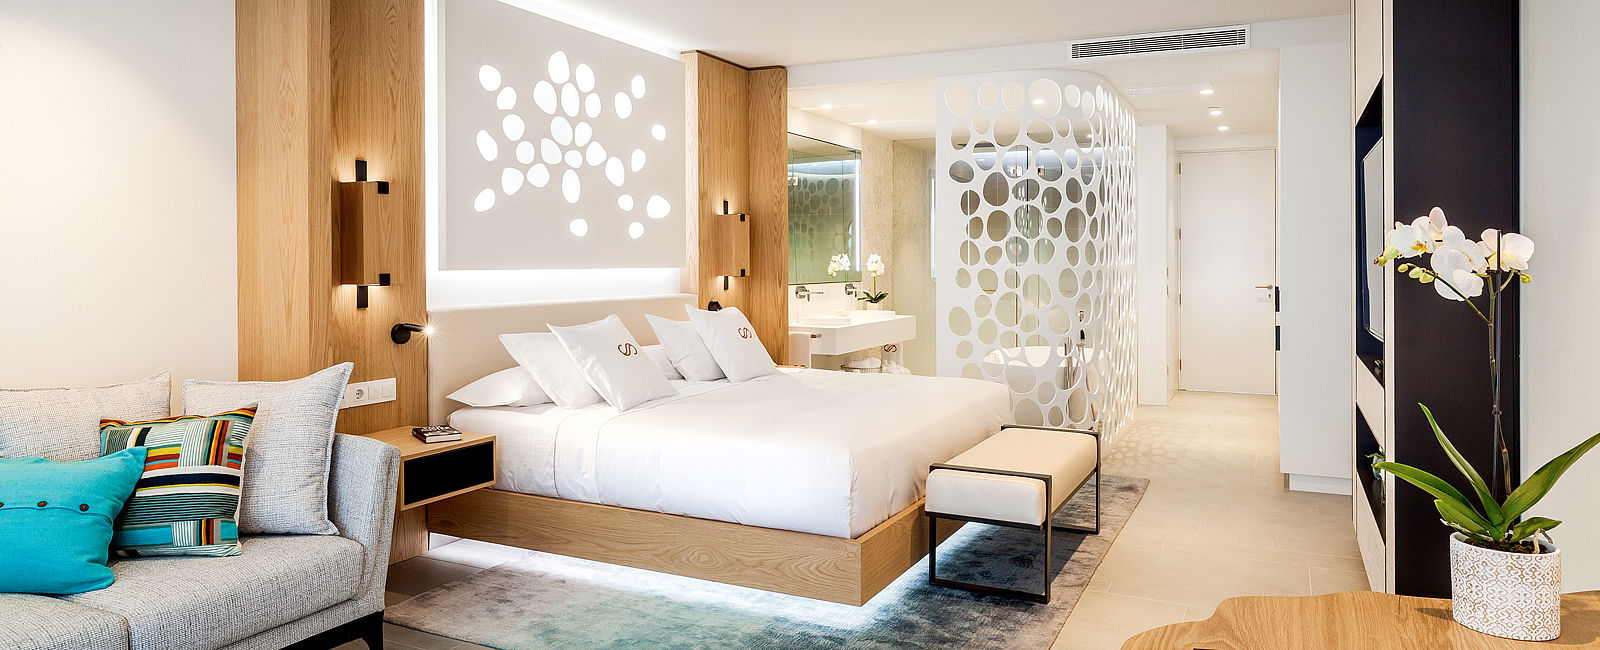 HOTEL ANGEBOTE
 Royal Hideaway Corales Resort: -25% 
